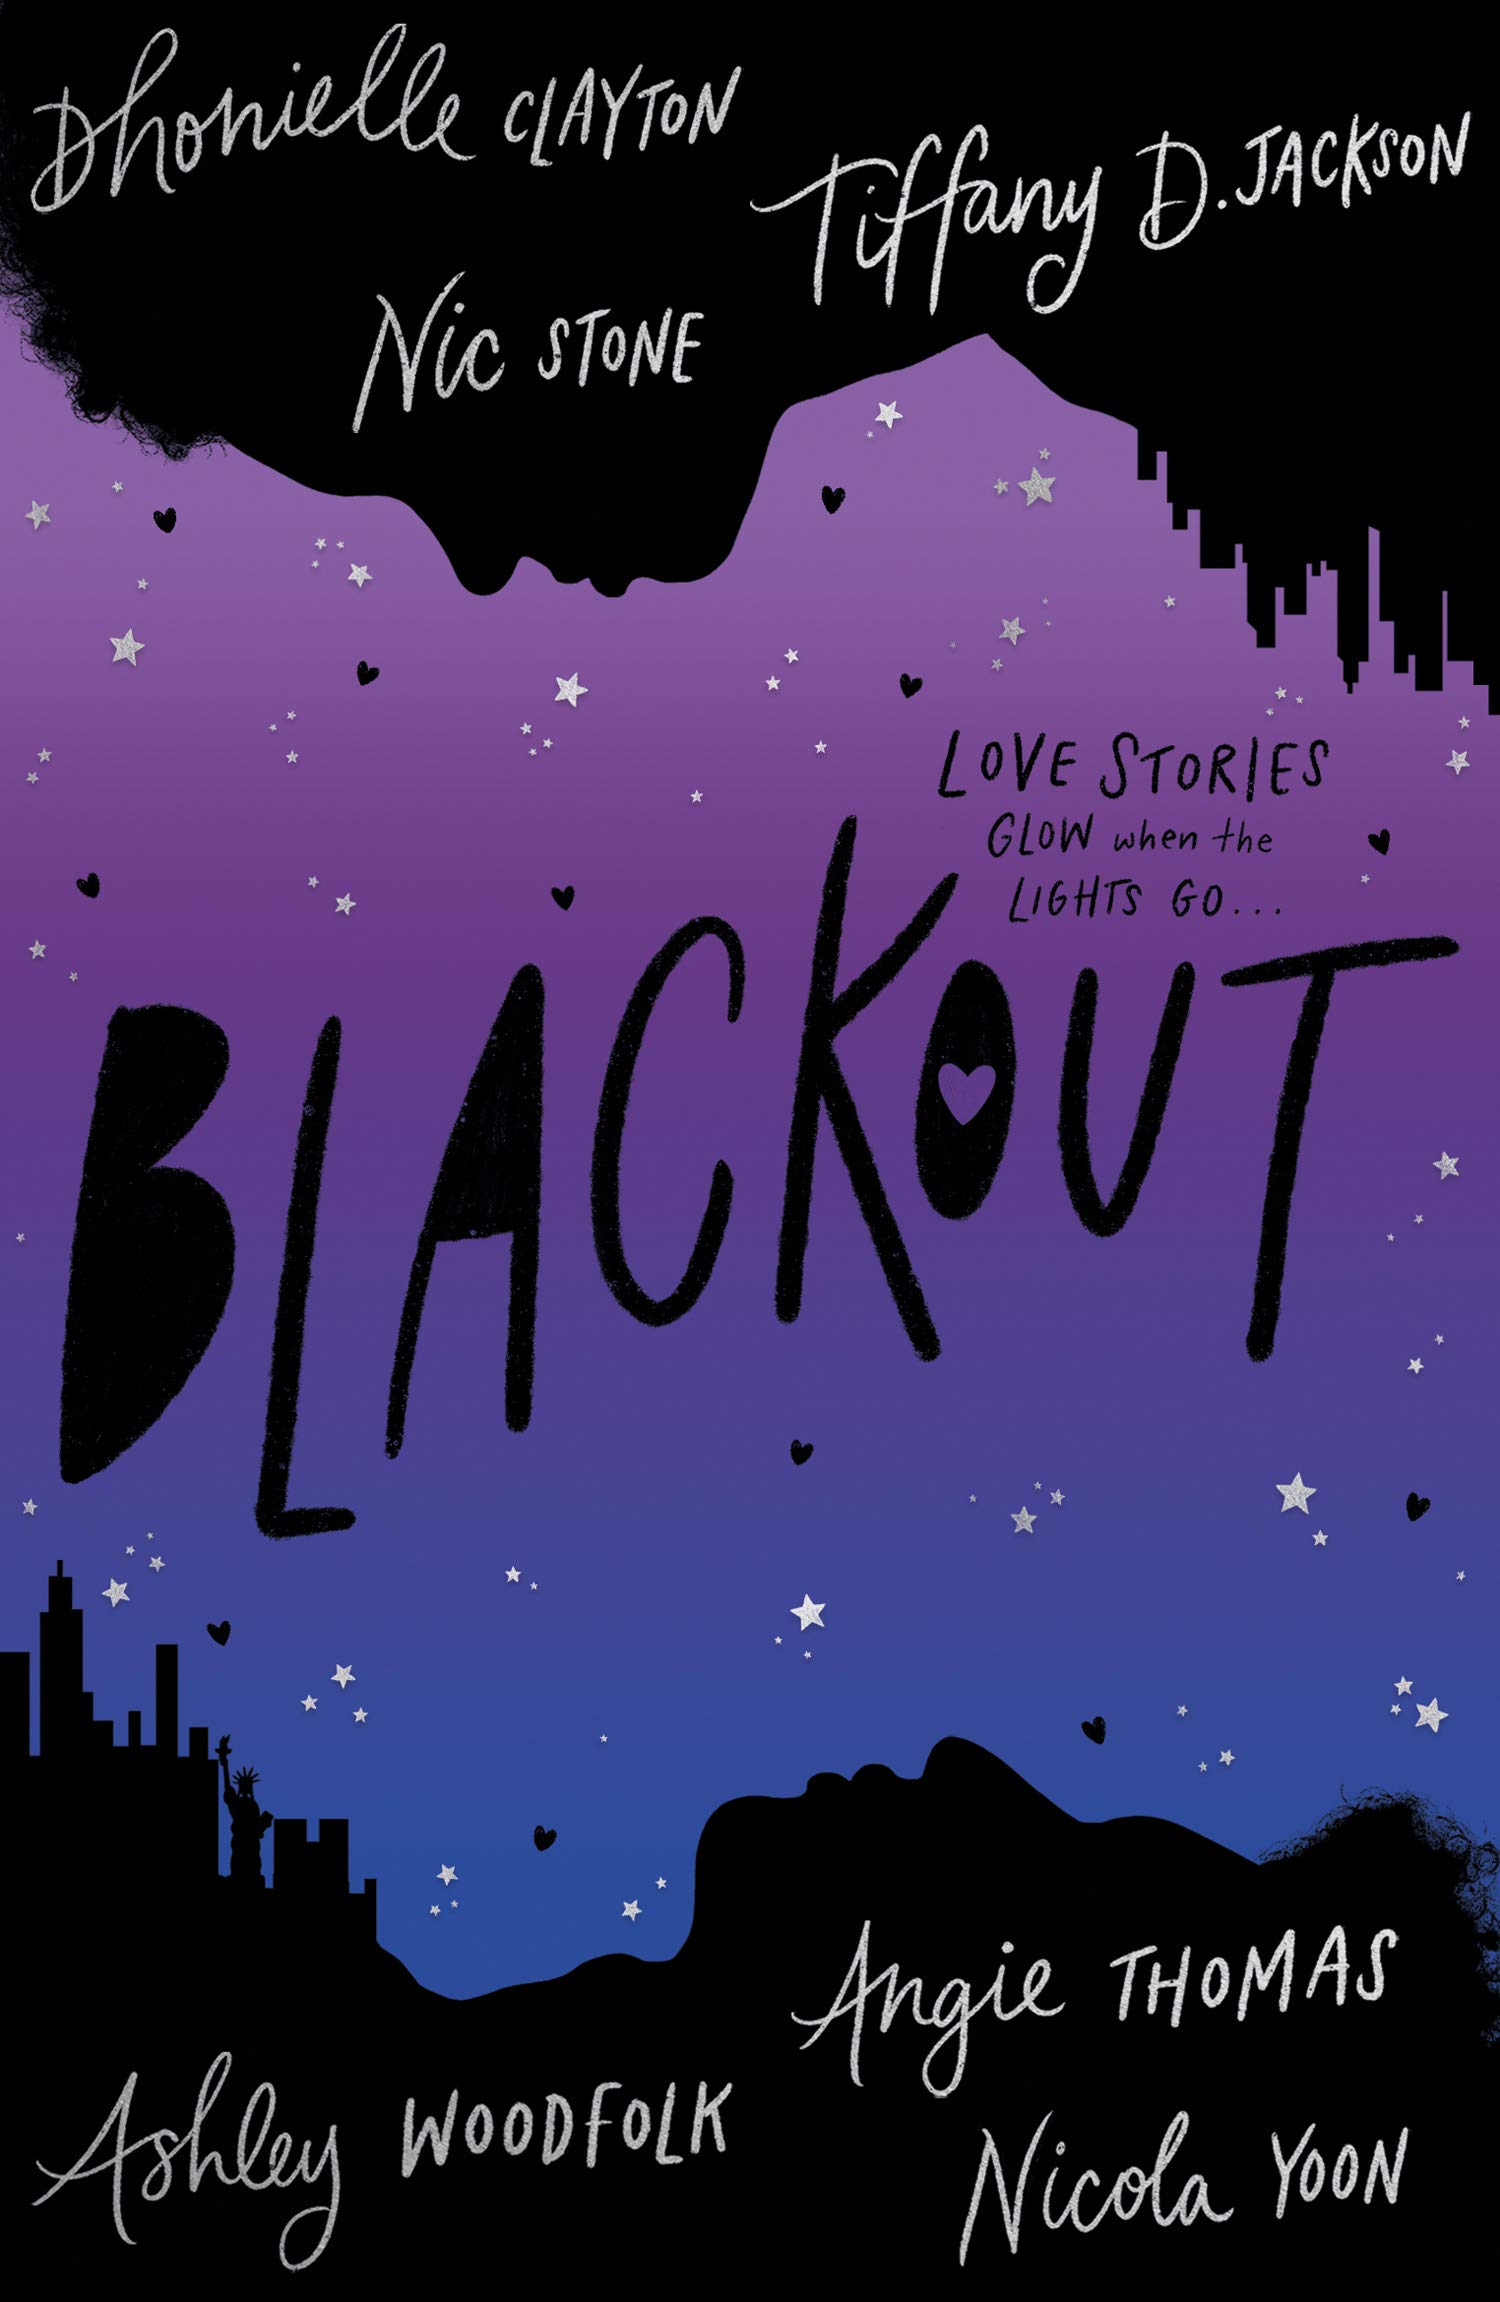 Blackout | Dhonielle Clayton, Tiffany D. Jackson, Nic Stone, Angie Thomas, Ashley Woodfolk, Nicola Yoon